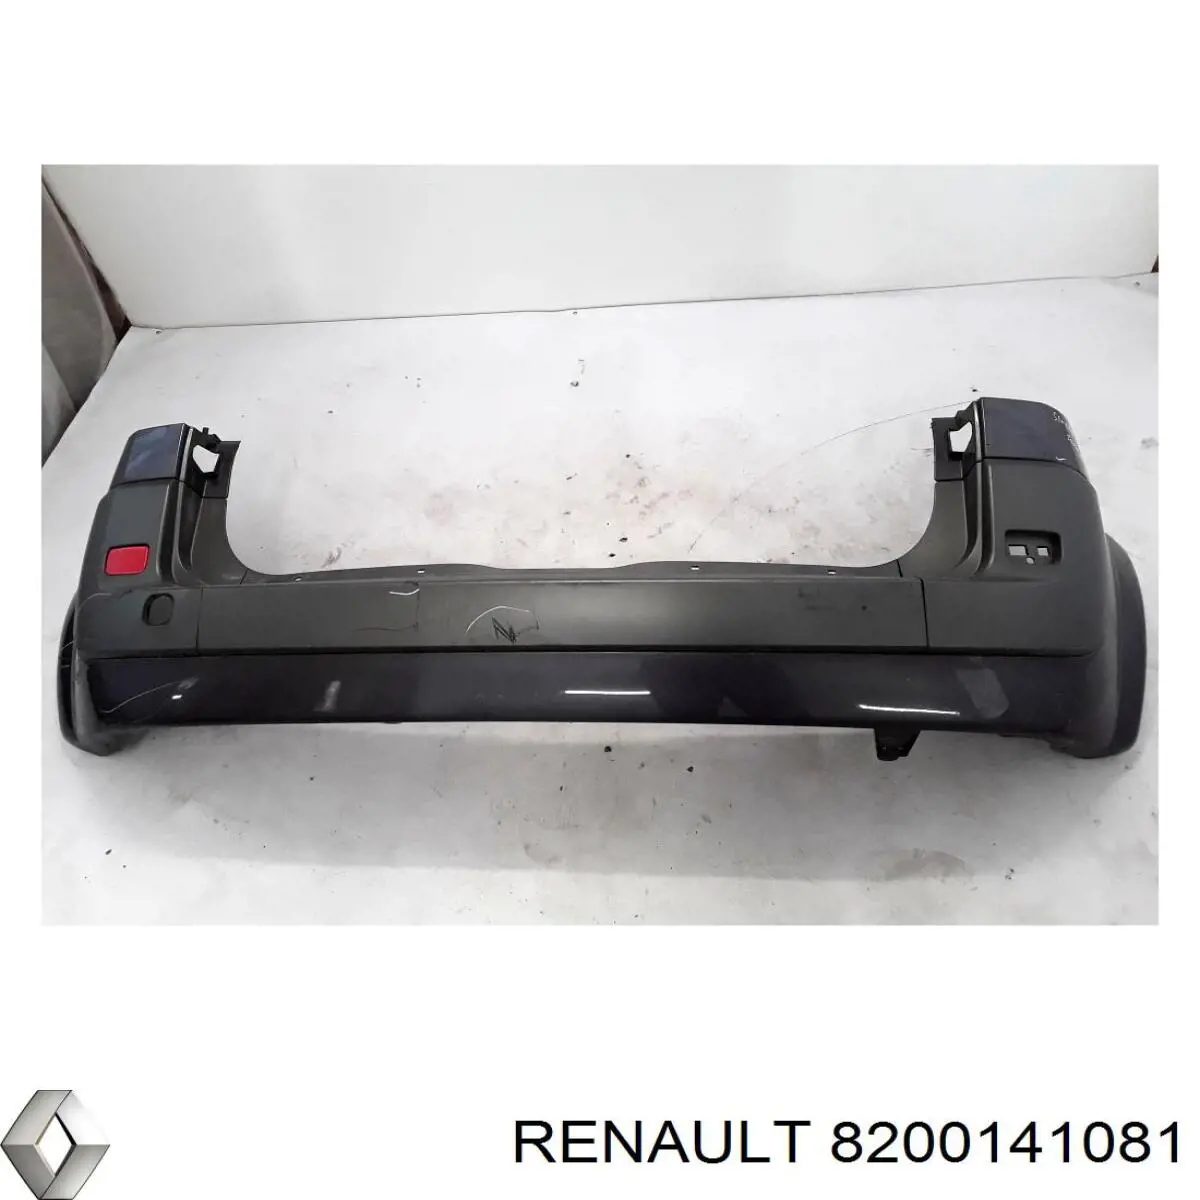 8200141081 Renault (RVI) parachoques trasero